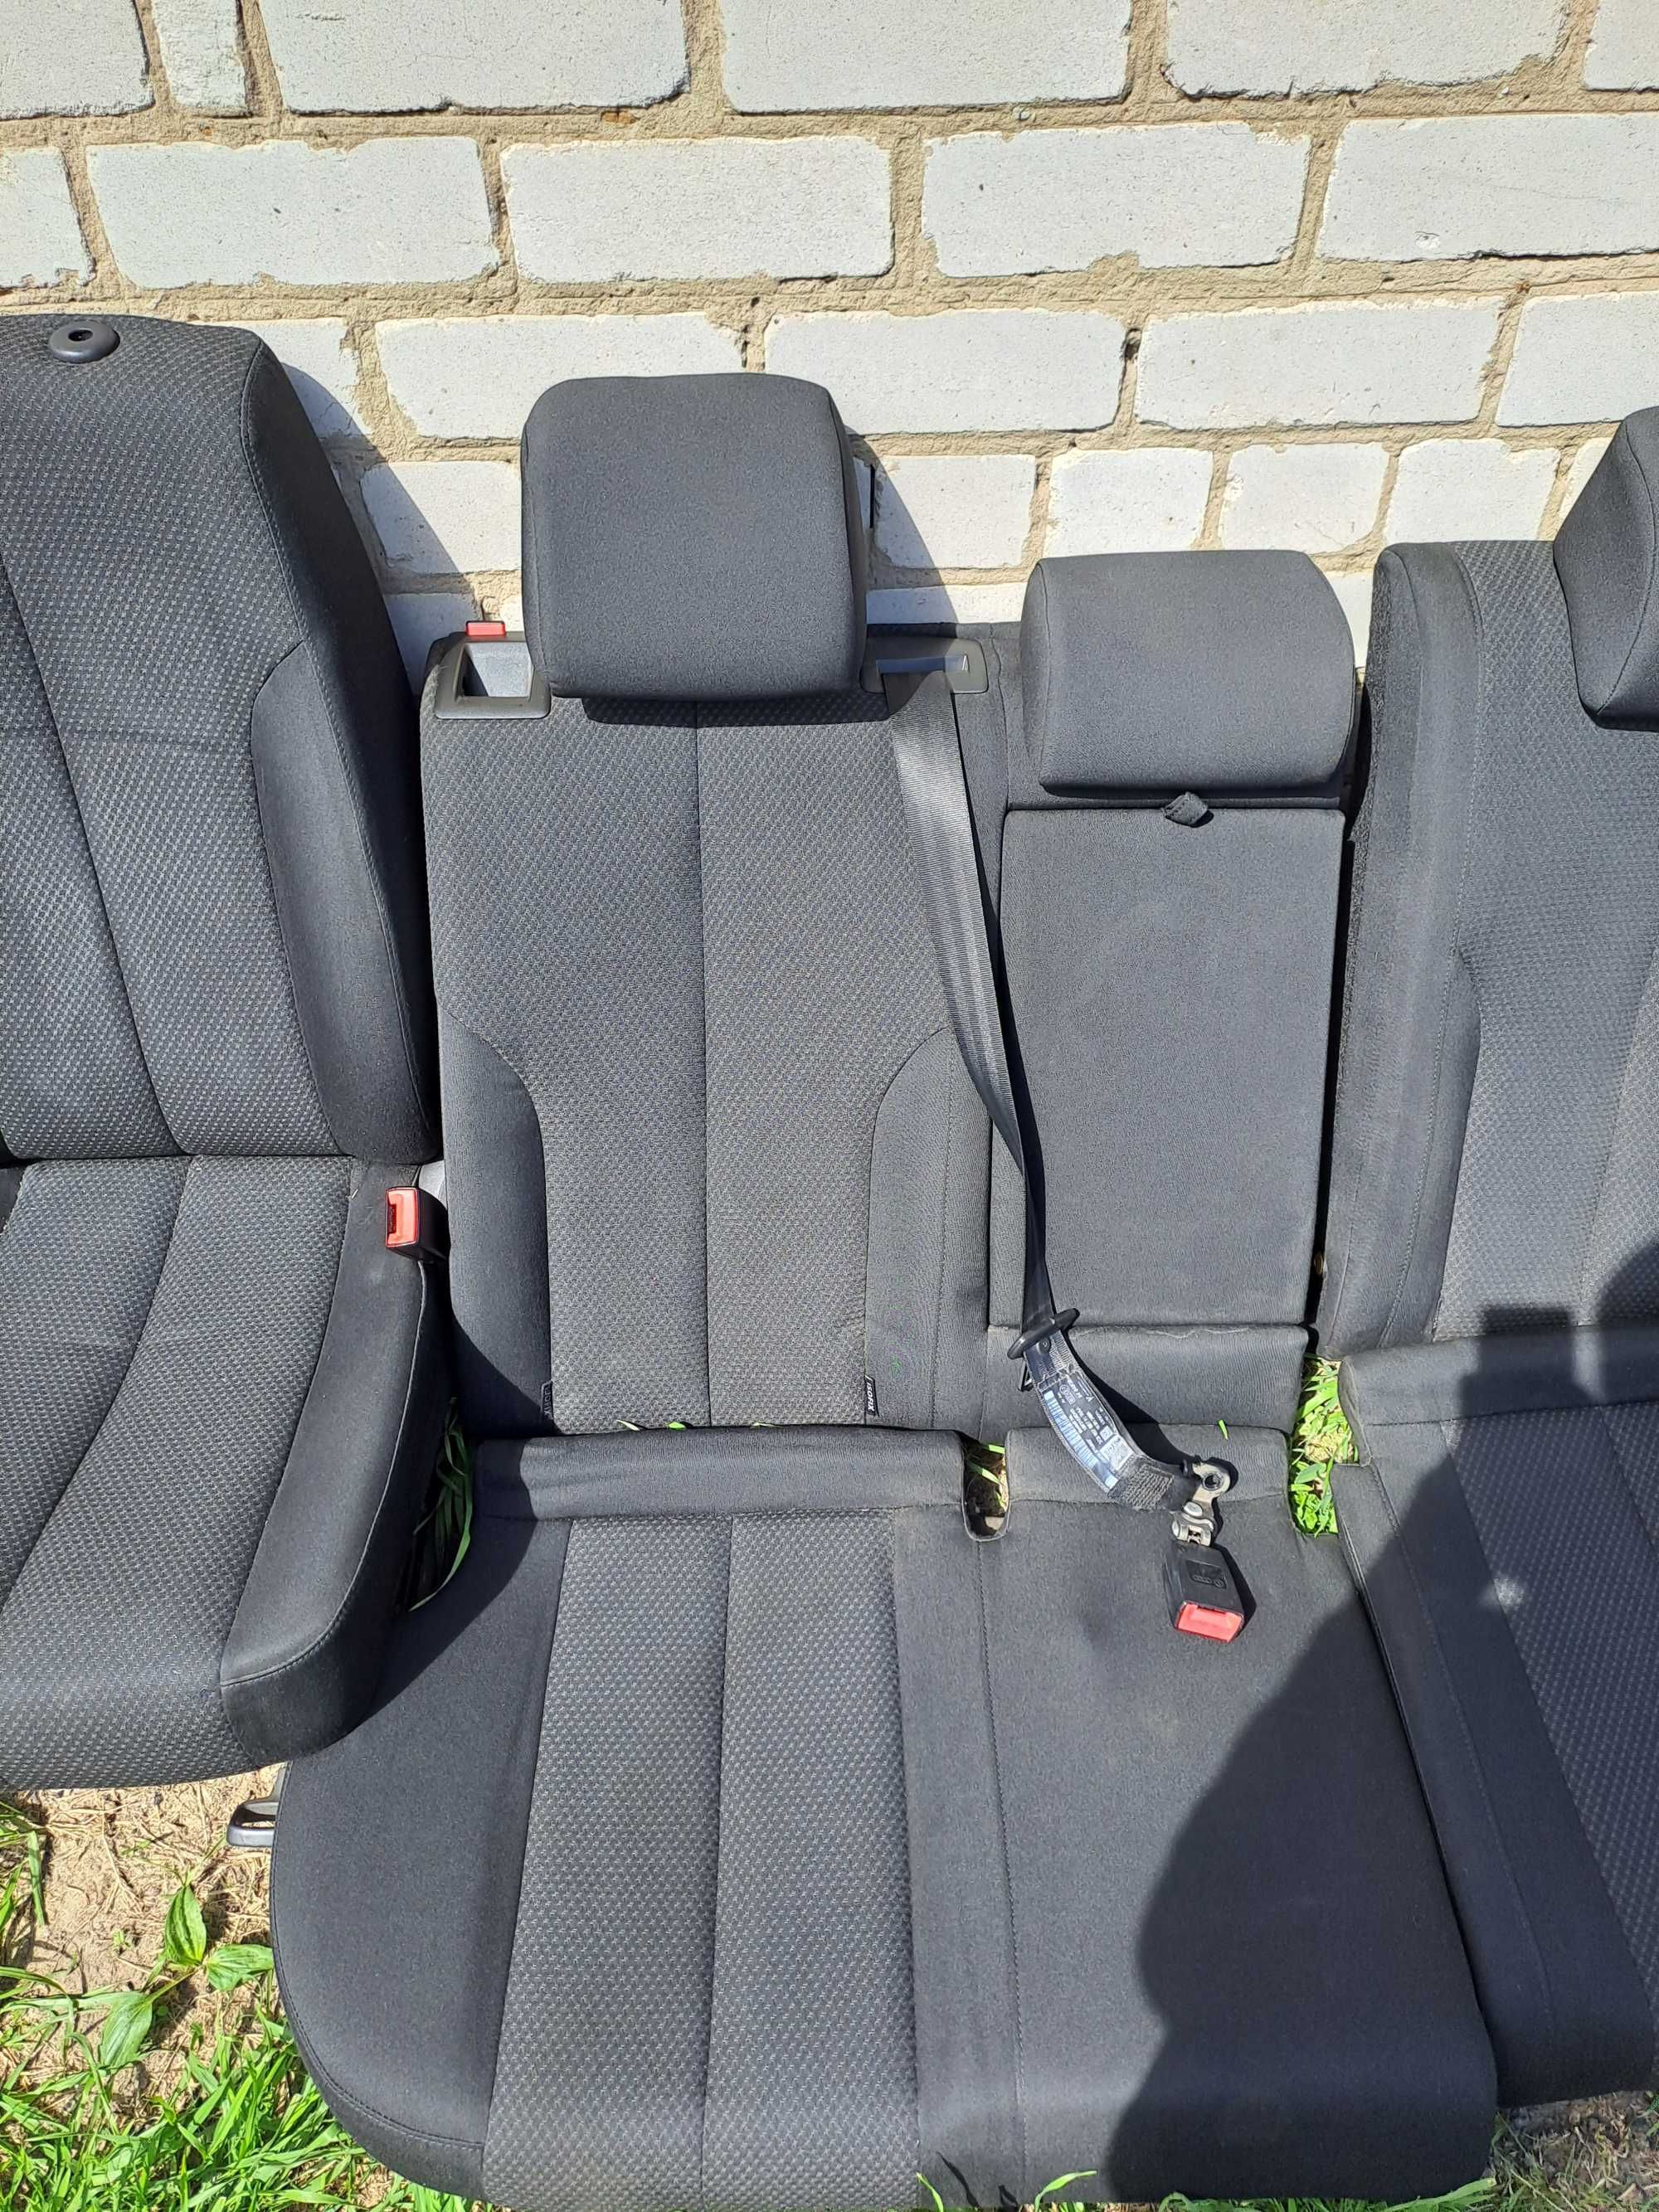 Продам сиденья для автомобиля VW Passat b6 universal (механические).